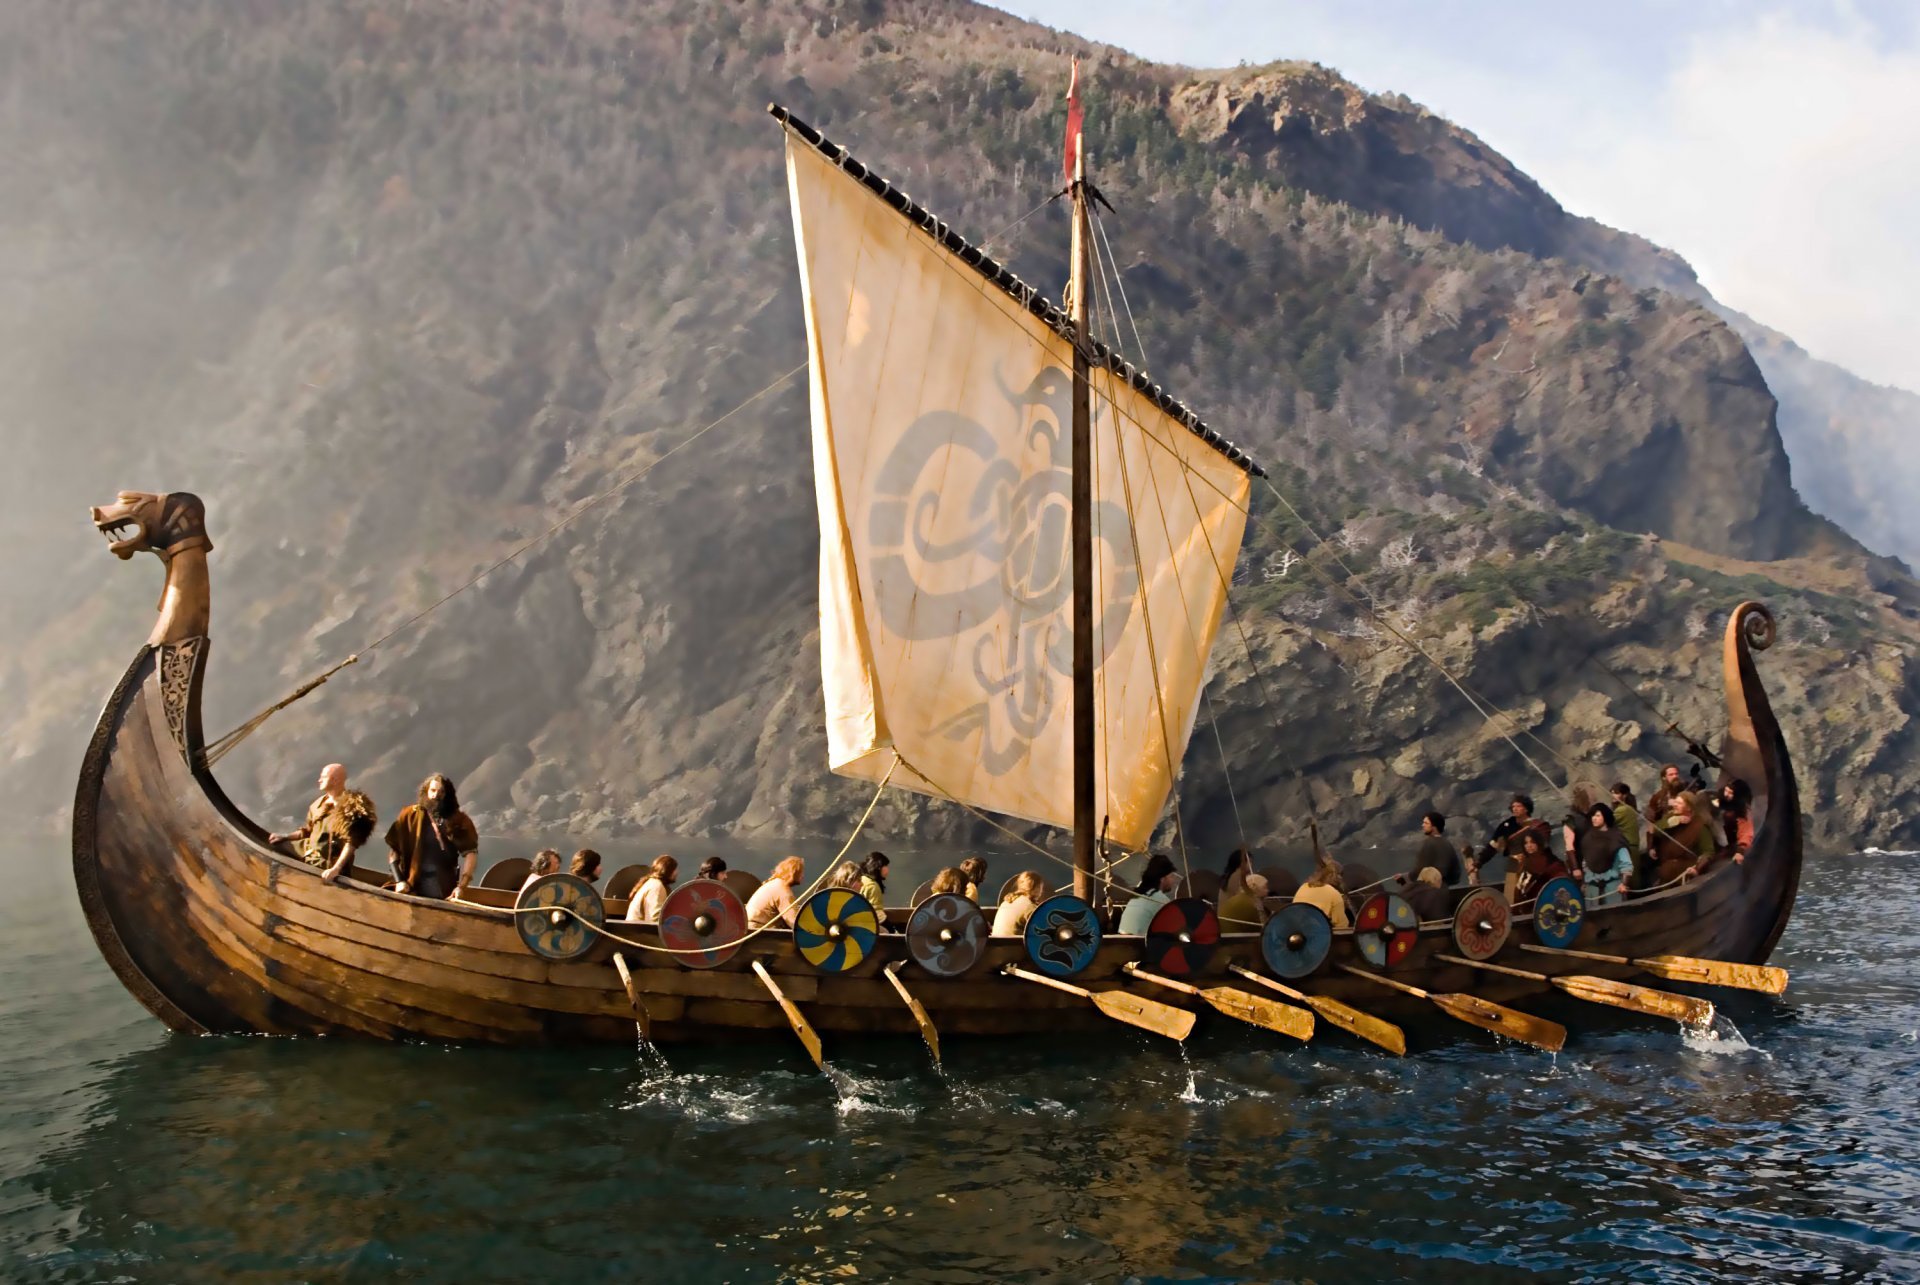 https://blog.micromark.com/wp-content/uploads/2018/04/drakkar-ship-dragon-sailors-vikings-sea.jpg